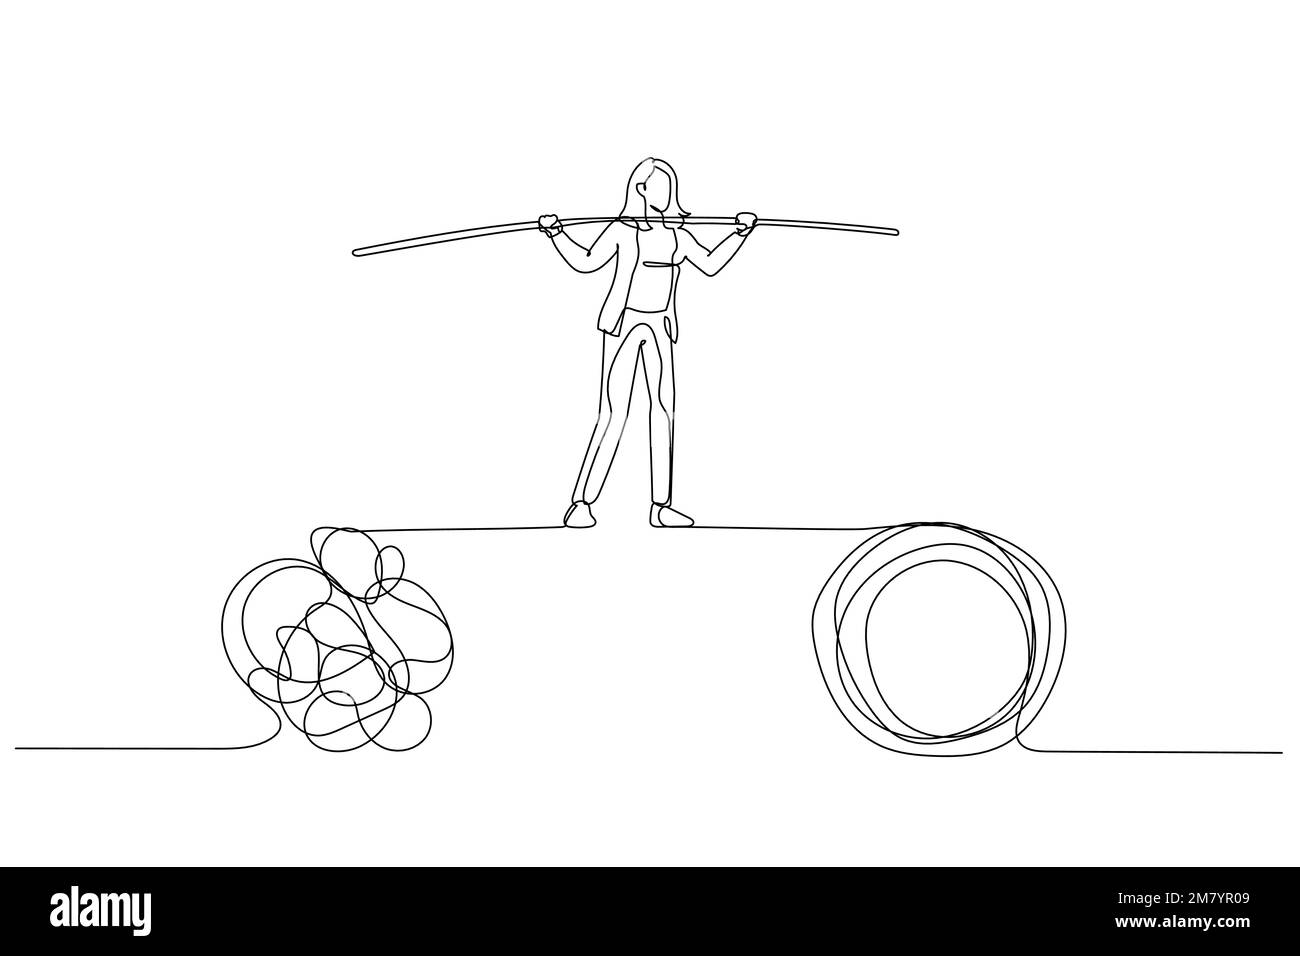 Zeichnung einer Geschäftsfrau läuft auf einem engen Seil und balanciert zwischen Problemen. Einzeiliges Design im Art-Stil Stock Vektor